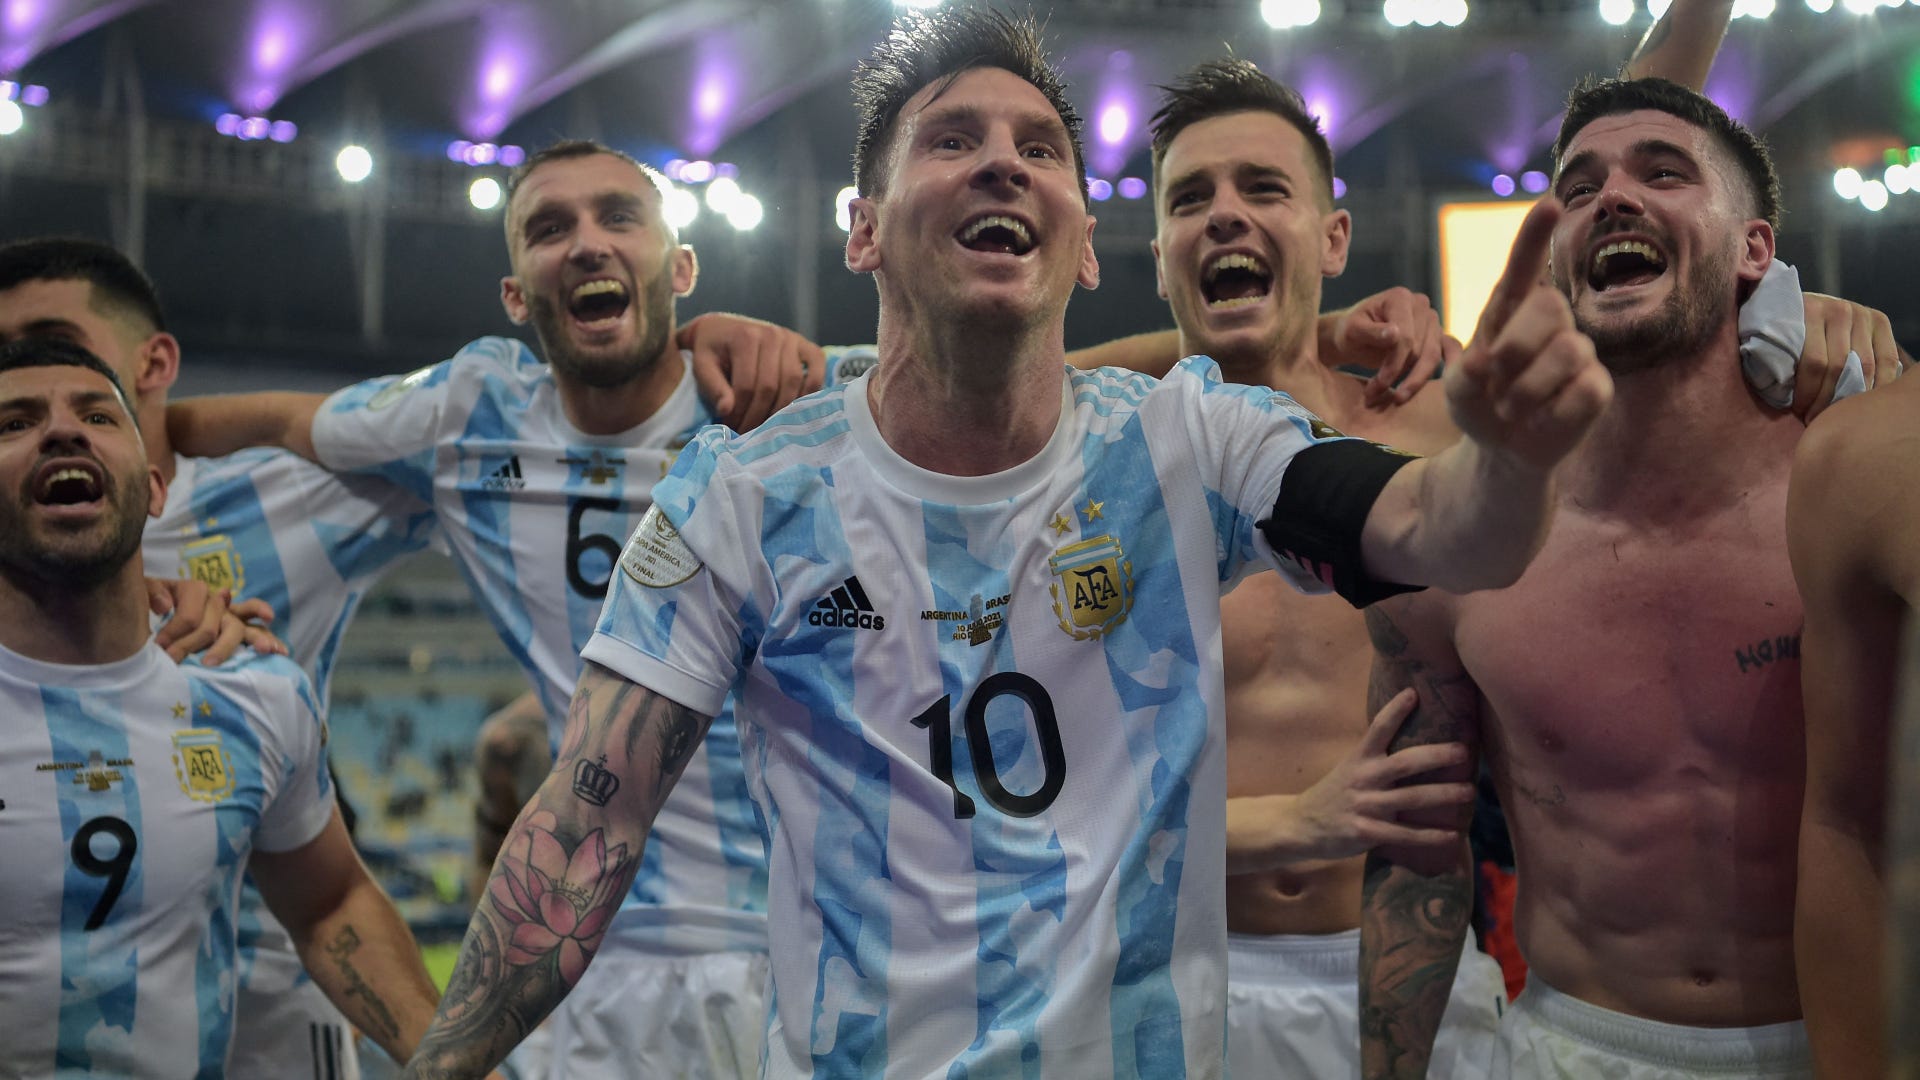 Messi là cầu thủ bóng đá có tầm ảnh hưởng rất lớn tại Argentina và toàn thế giới. Khả năng chơi bóng siêu việt của anh đã tạo nên nhiều pha bóng ấn tượng, mang tới những trận đấu kịch tính. Nếu bạn là fan của Messi, thì hãy xem ngay những hình ảnh đẹp nhất về anh trên website.